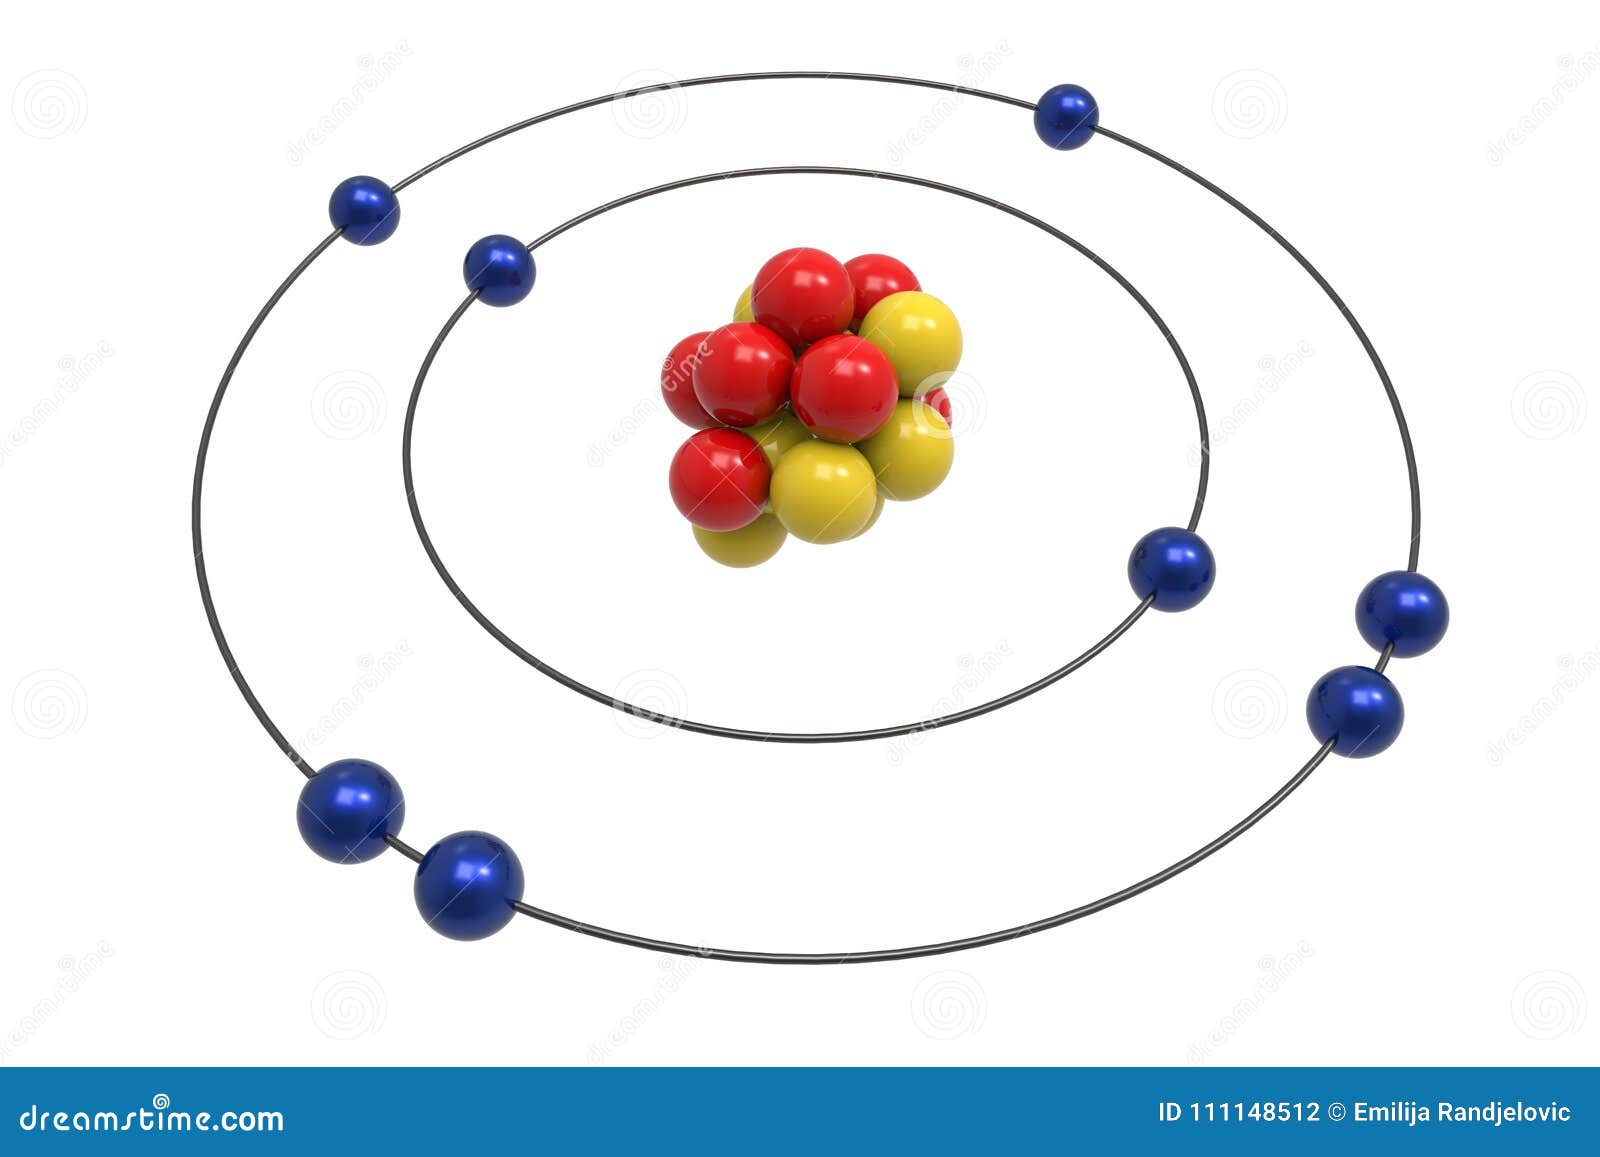 Top 83+ imagen modelo atomico de bohr oxigeno